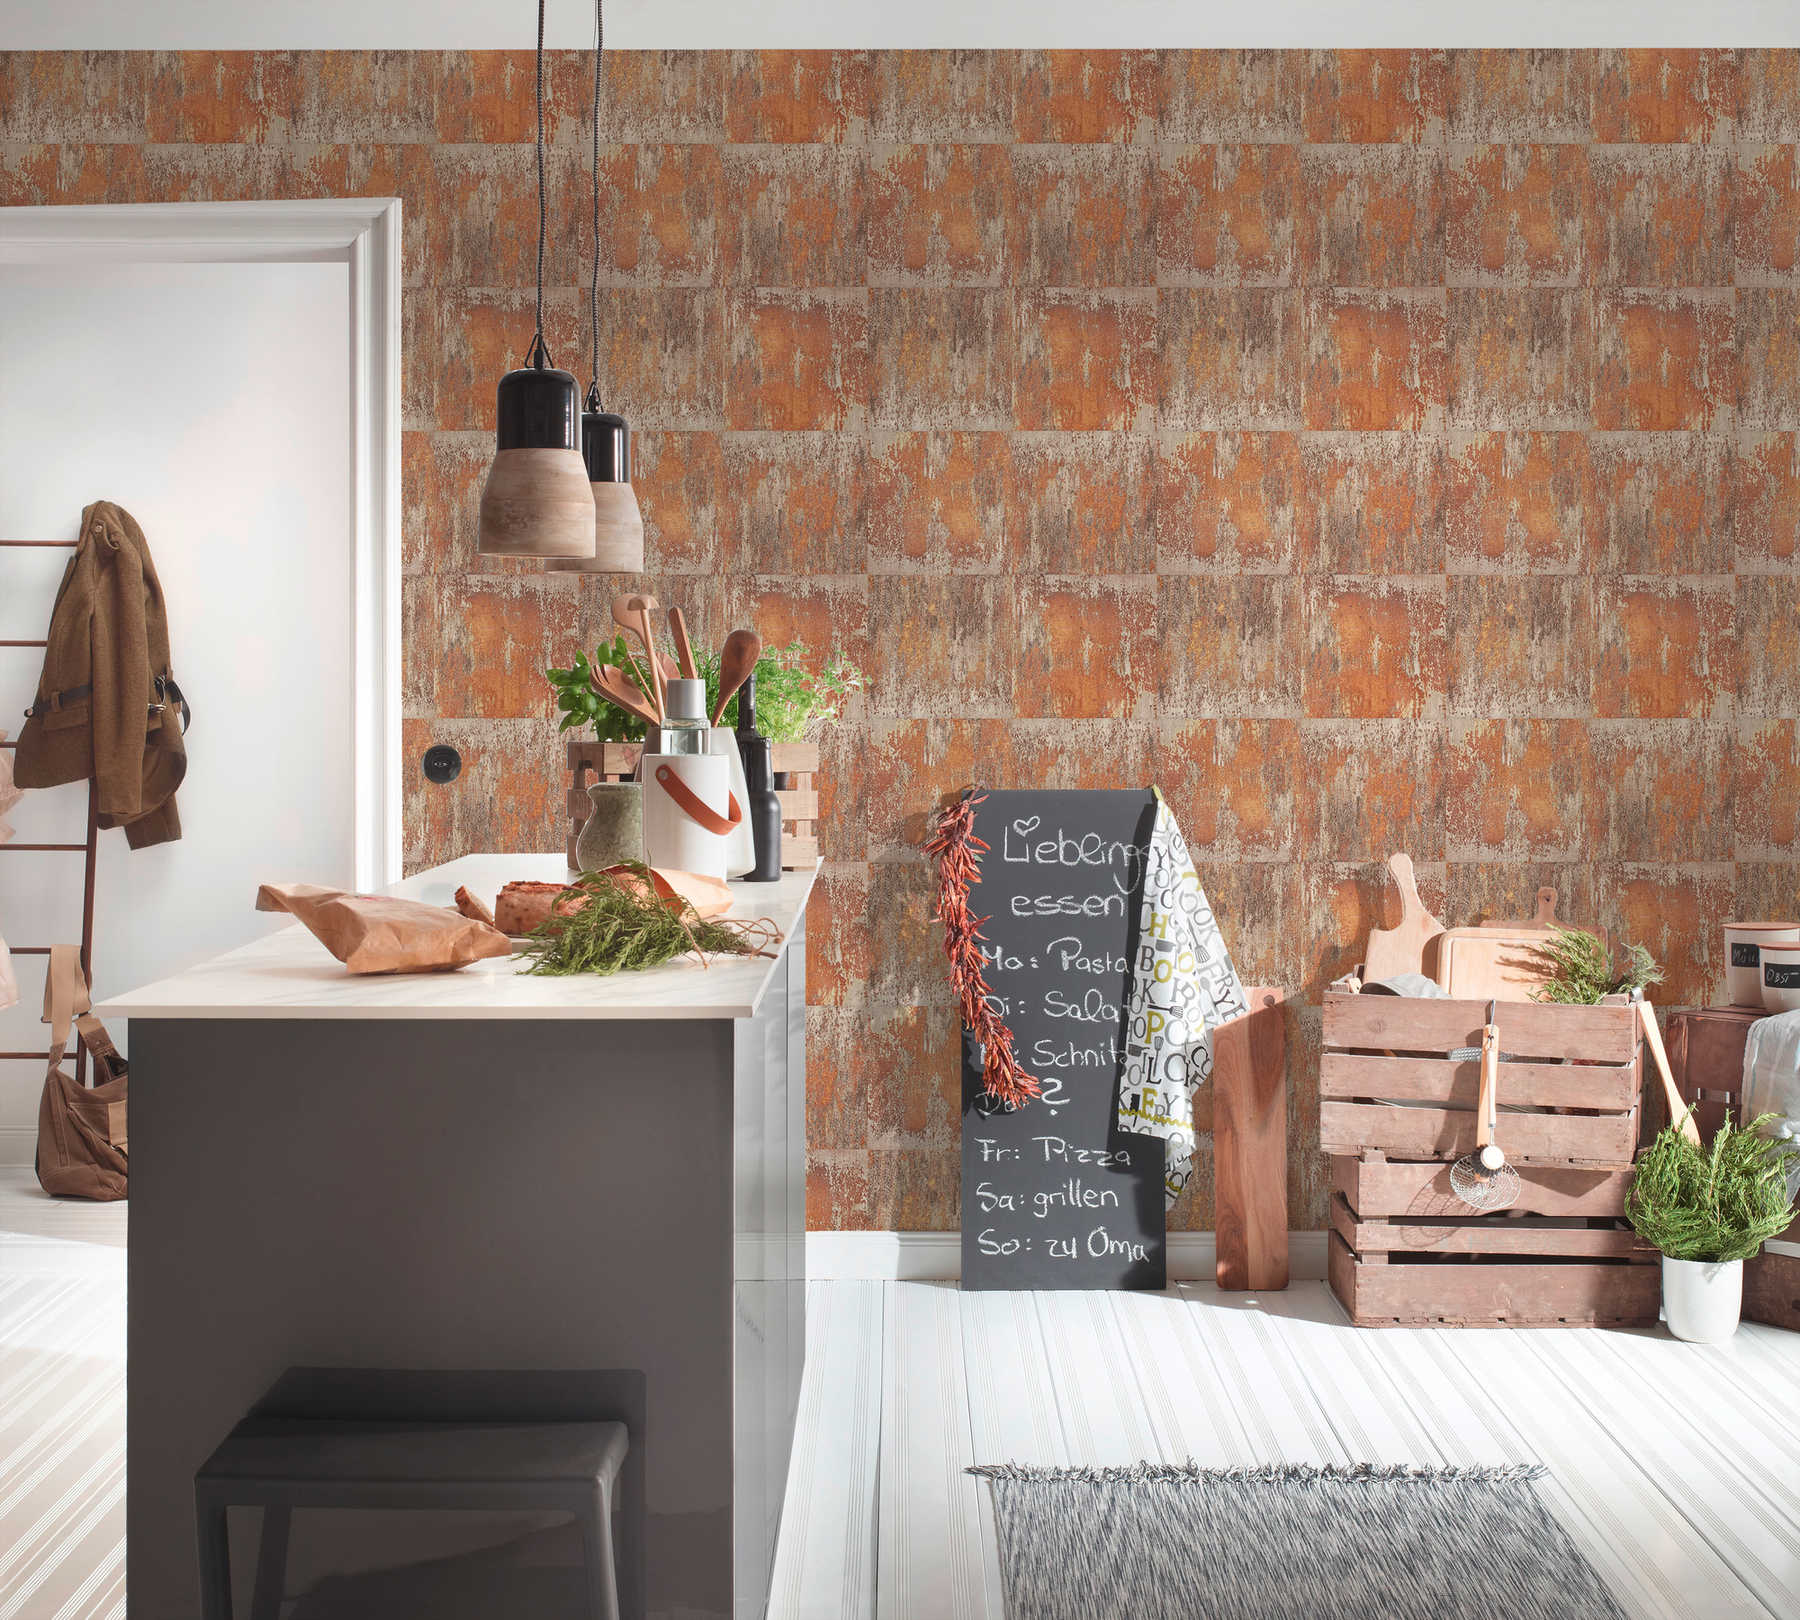             Vliestapete Patina-Design mit Rost und Kupfereffekten – Orange, Braun, Kupfer
        